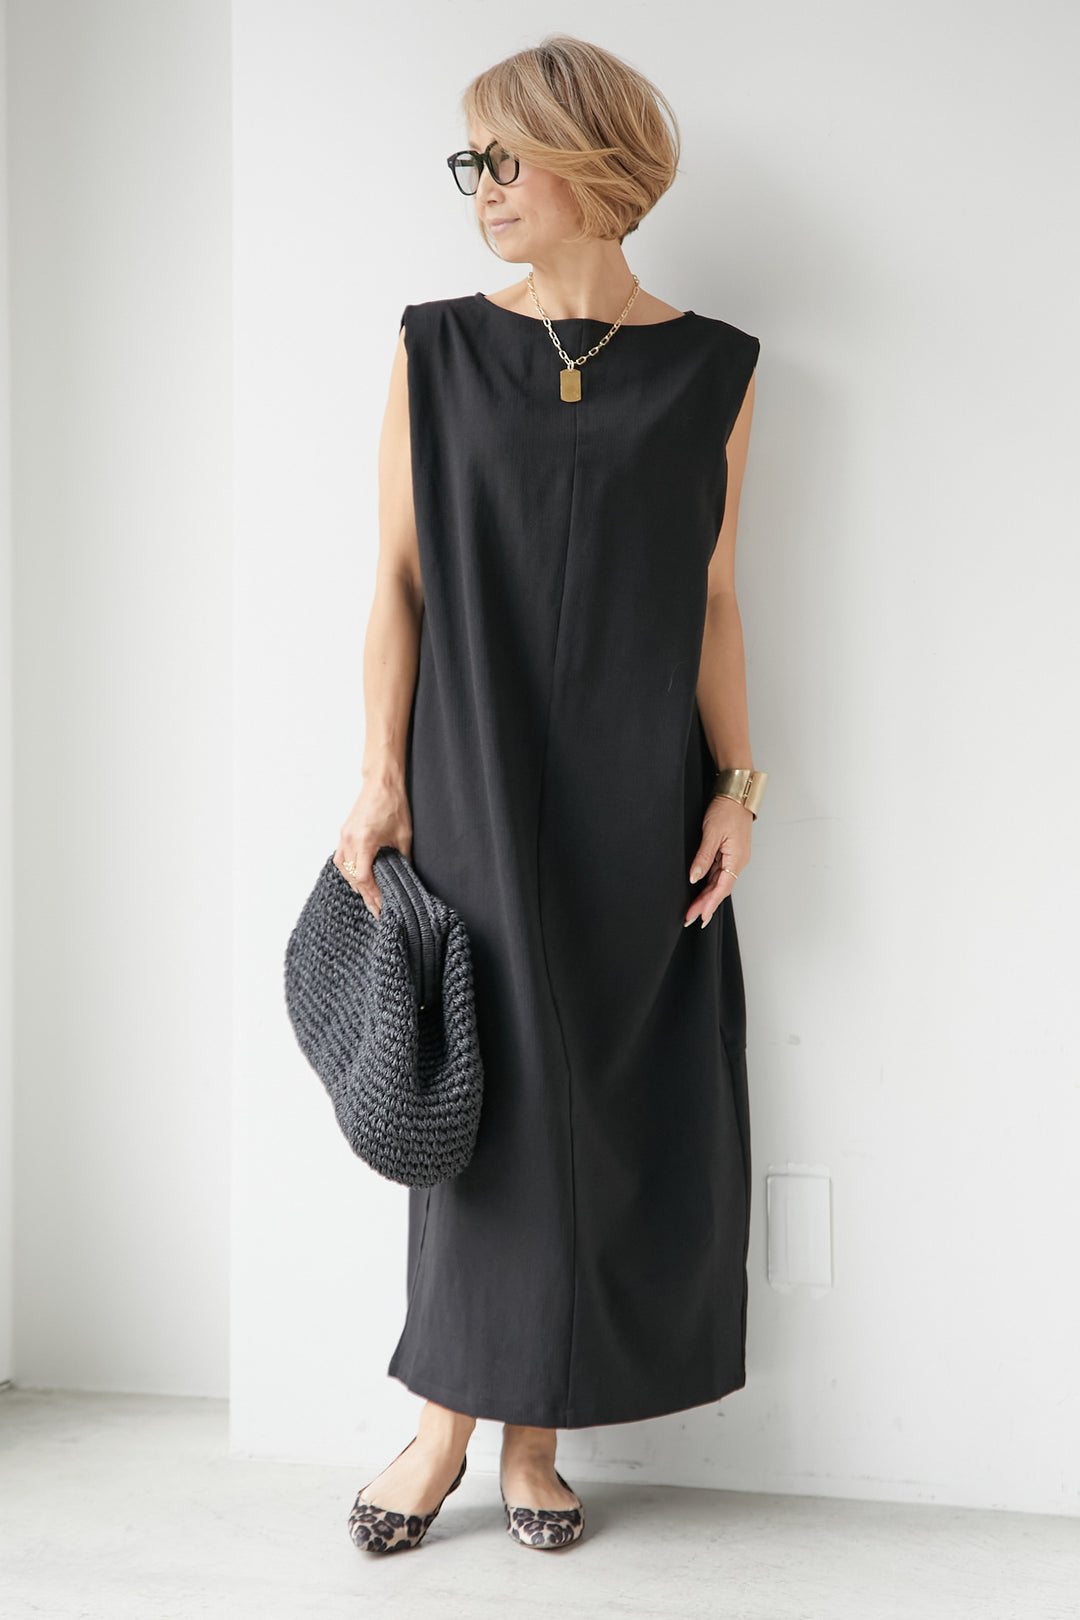 Linen-like I-line dress